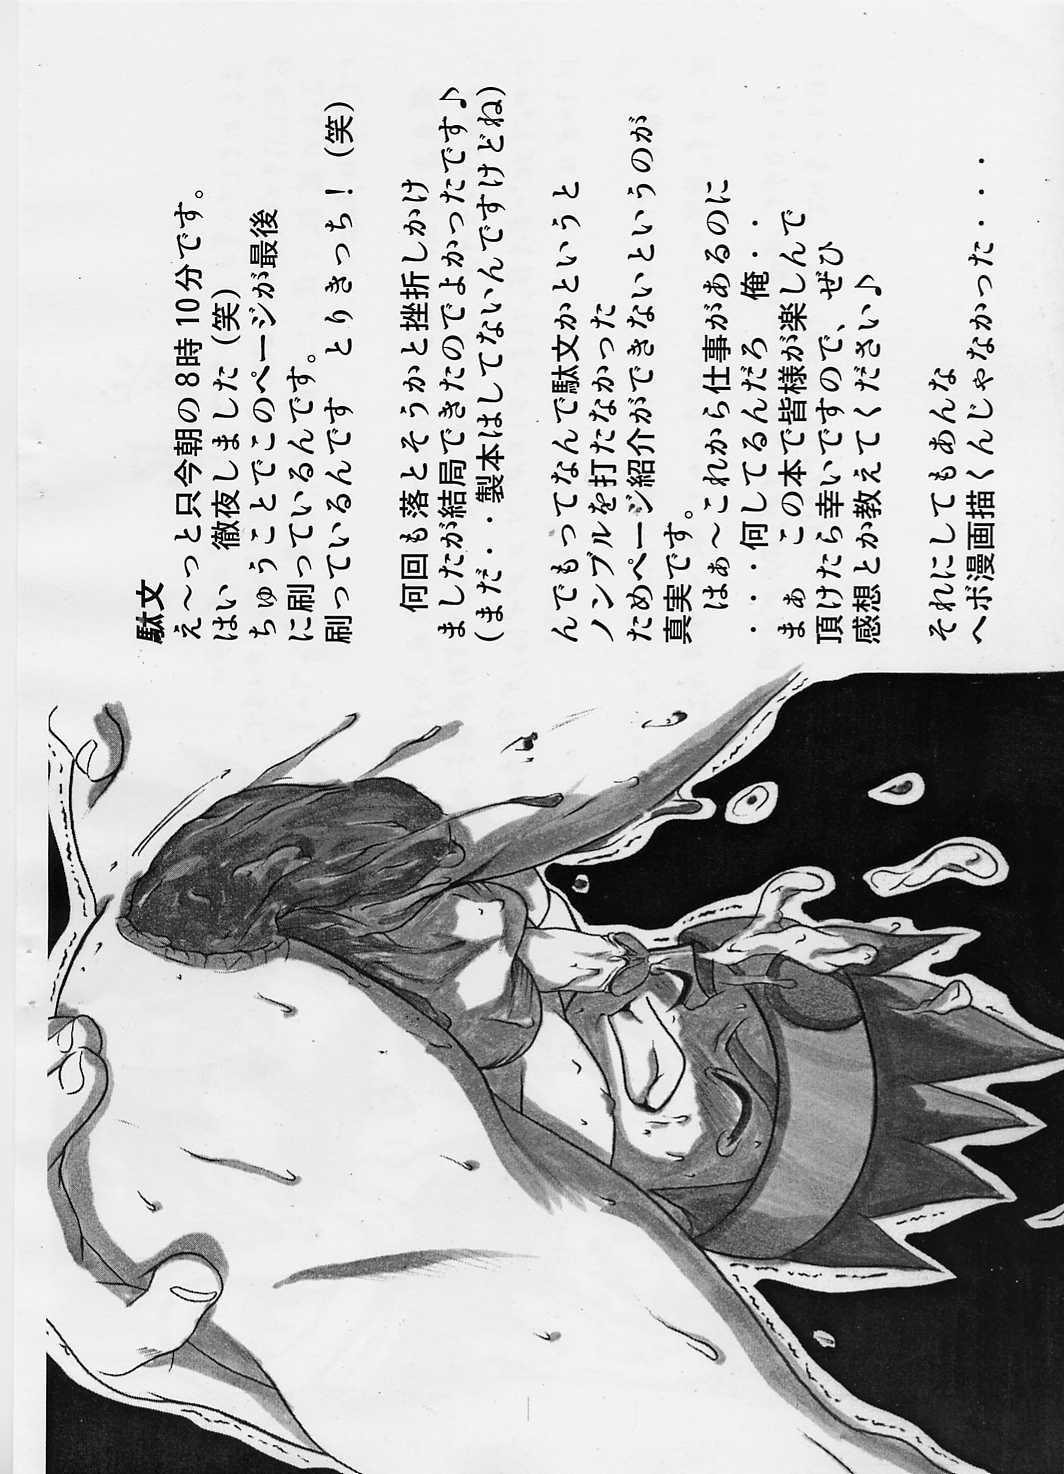  Shotakatsu VOL 1 - Naruto Hunter x hunter Bakusou kyoudai lets and go Rurouni kenshin | samurai x Viet - Page 3